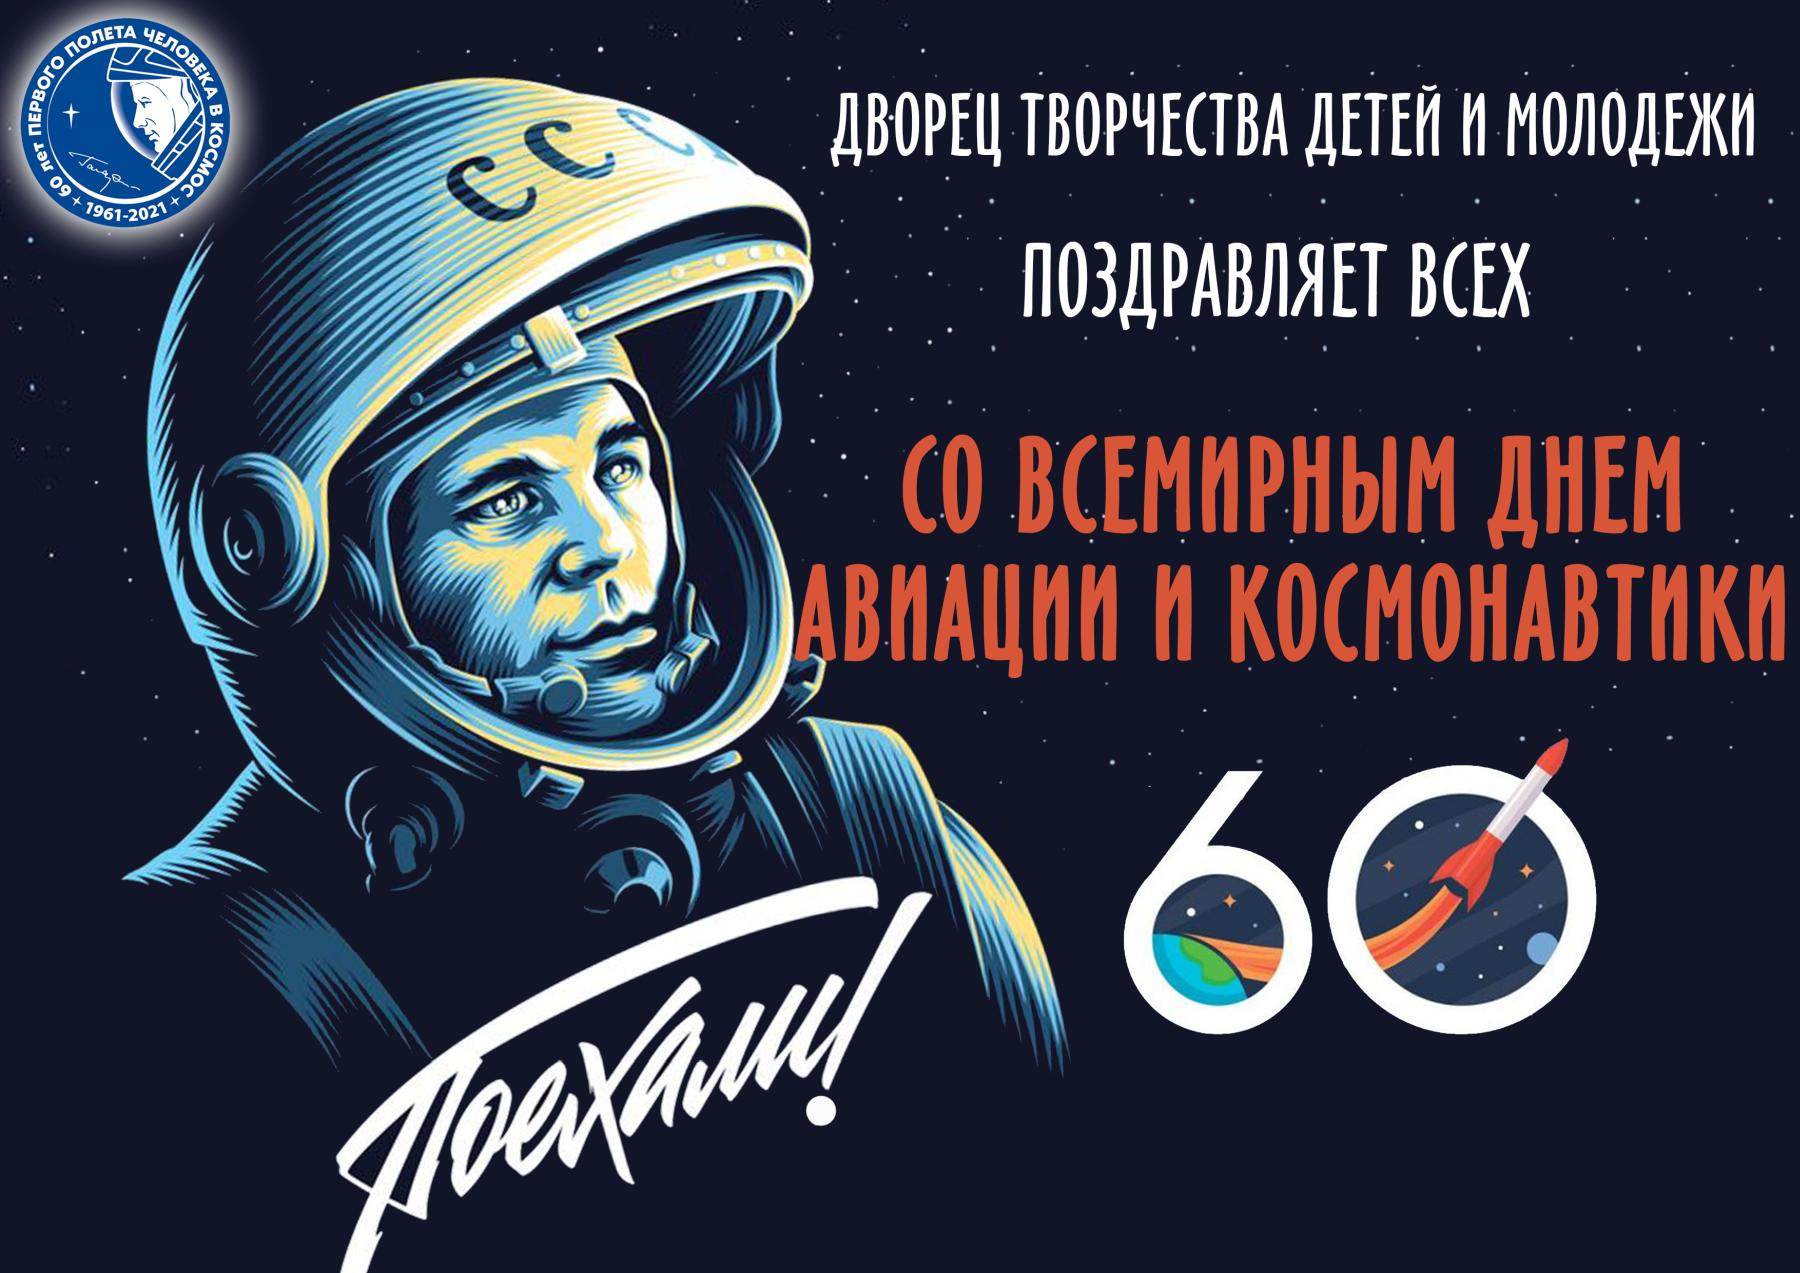 Хорошего дня космонавтики. День космонавтики. С днем космонавтики открытки. Плакат "день космонавтики". С днем космонавтики поздравление.